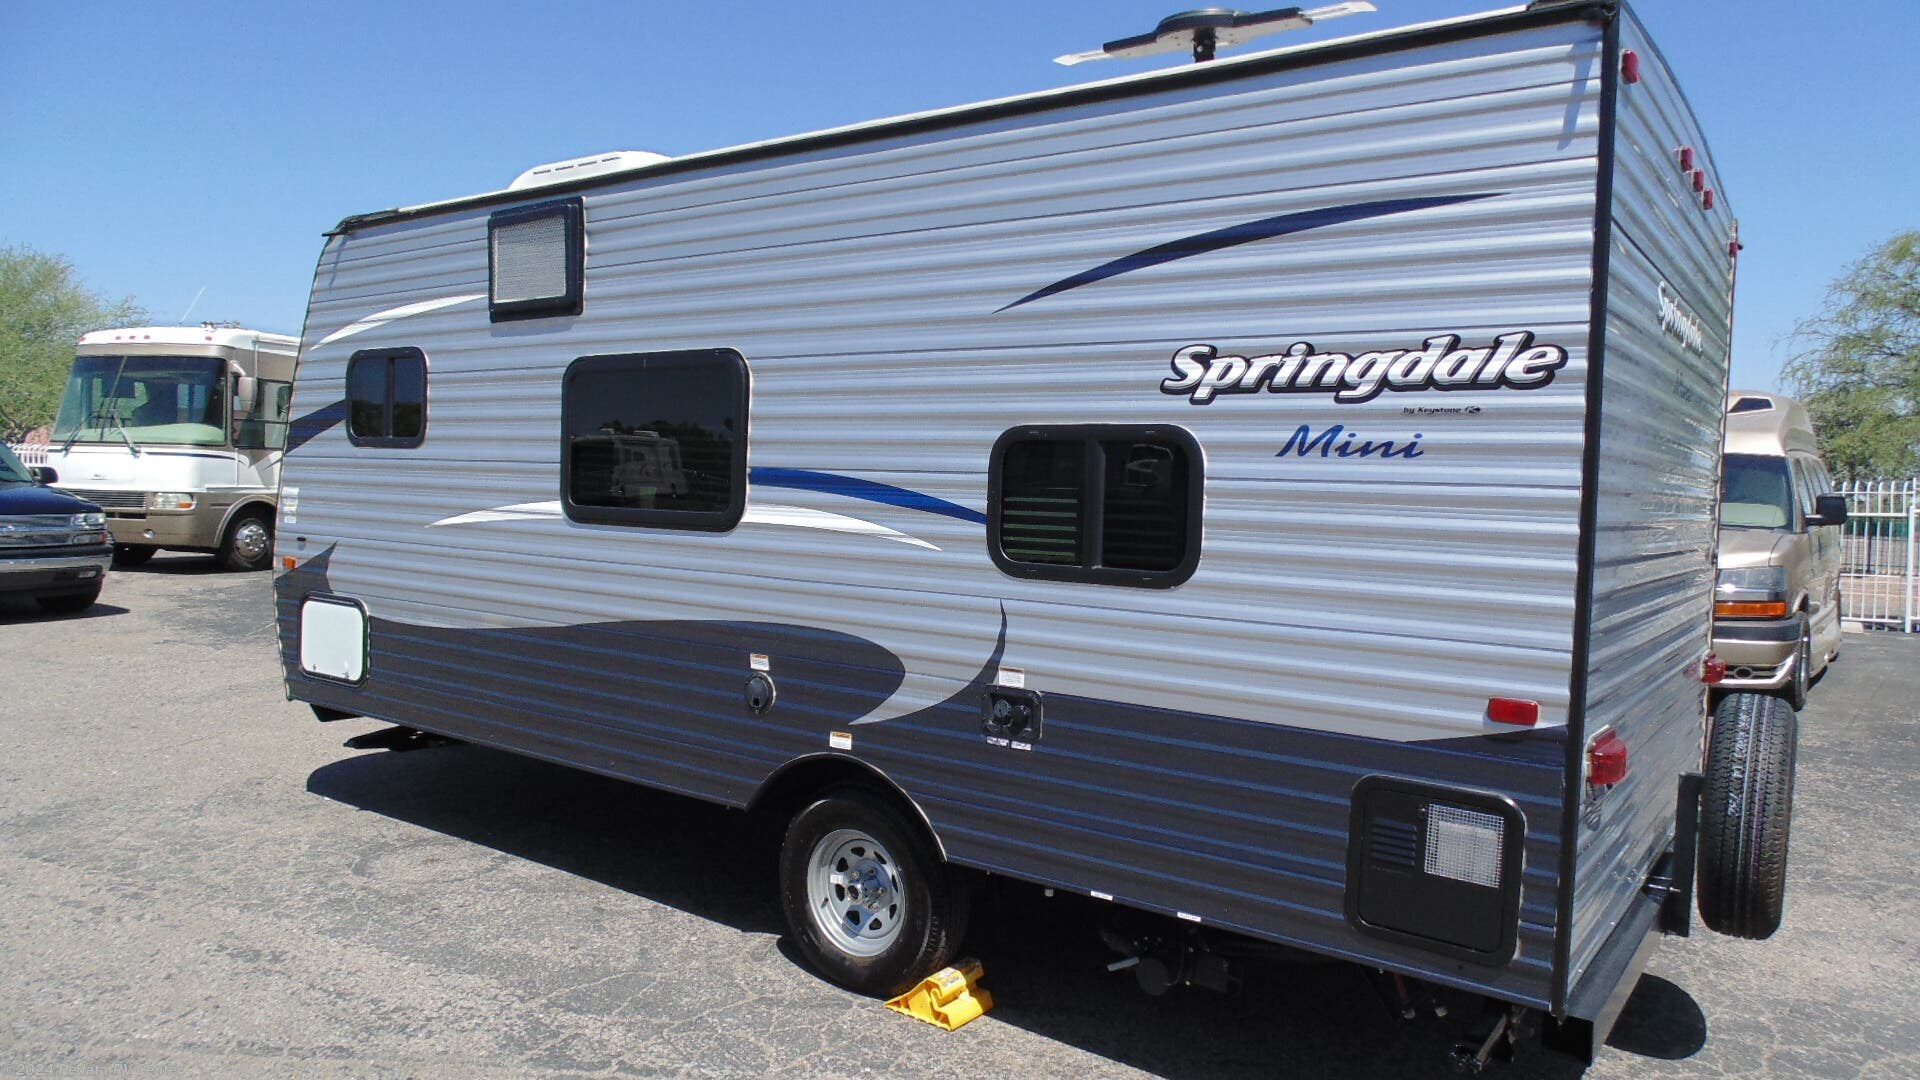 2018 springdale mini travel trailer